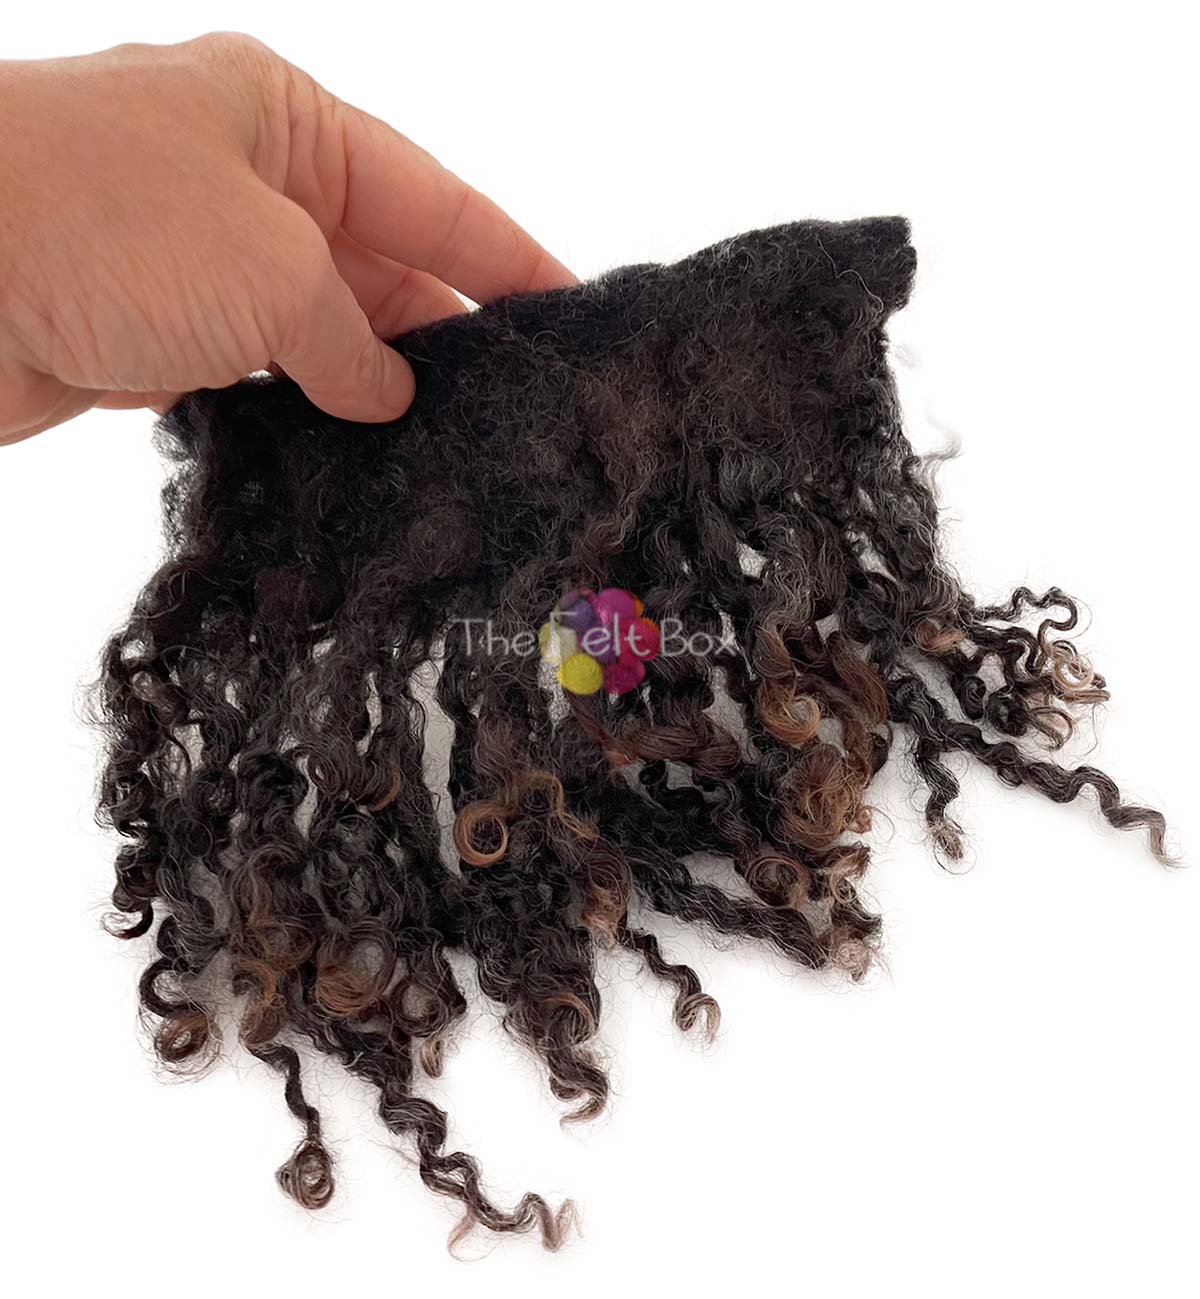 Curly Wool Locks on cloth, Wensleydale Brown